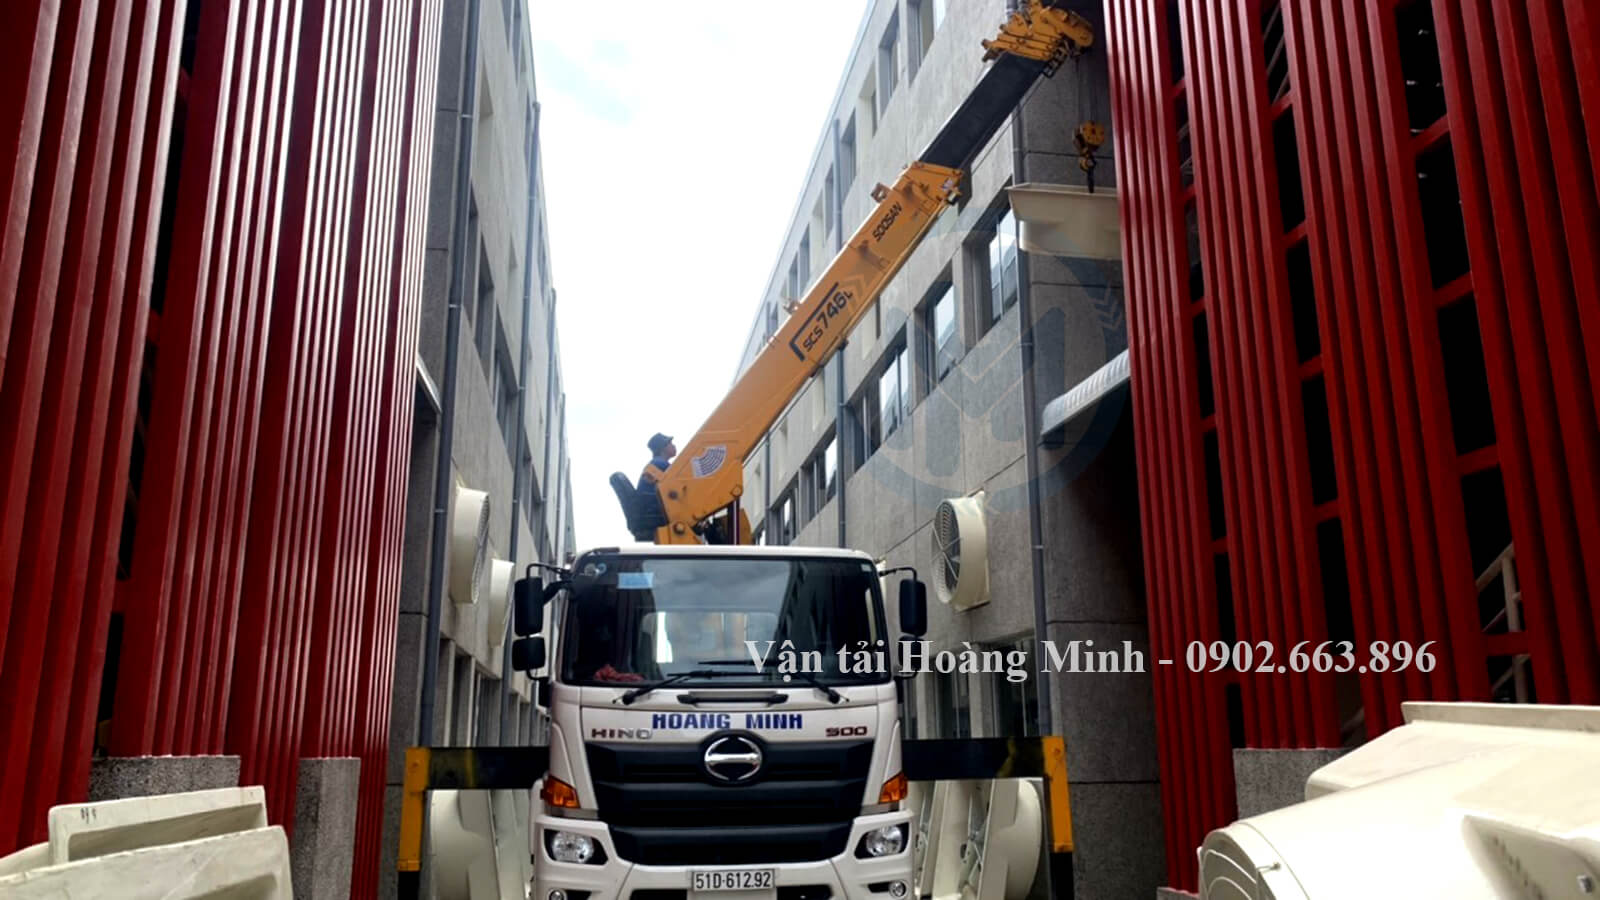 Cho thuê xe cẩu Dương Minh Châu đa dạng xe cẩu, xe tải, xe nâng,...jpg